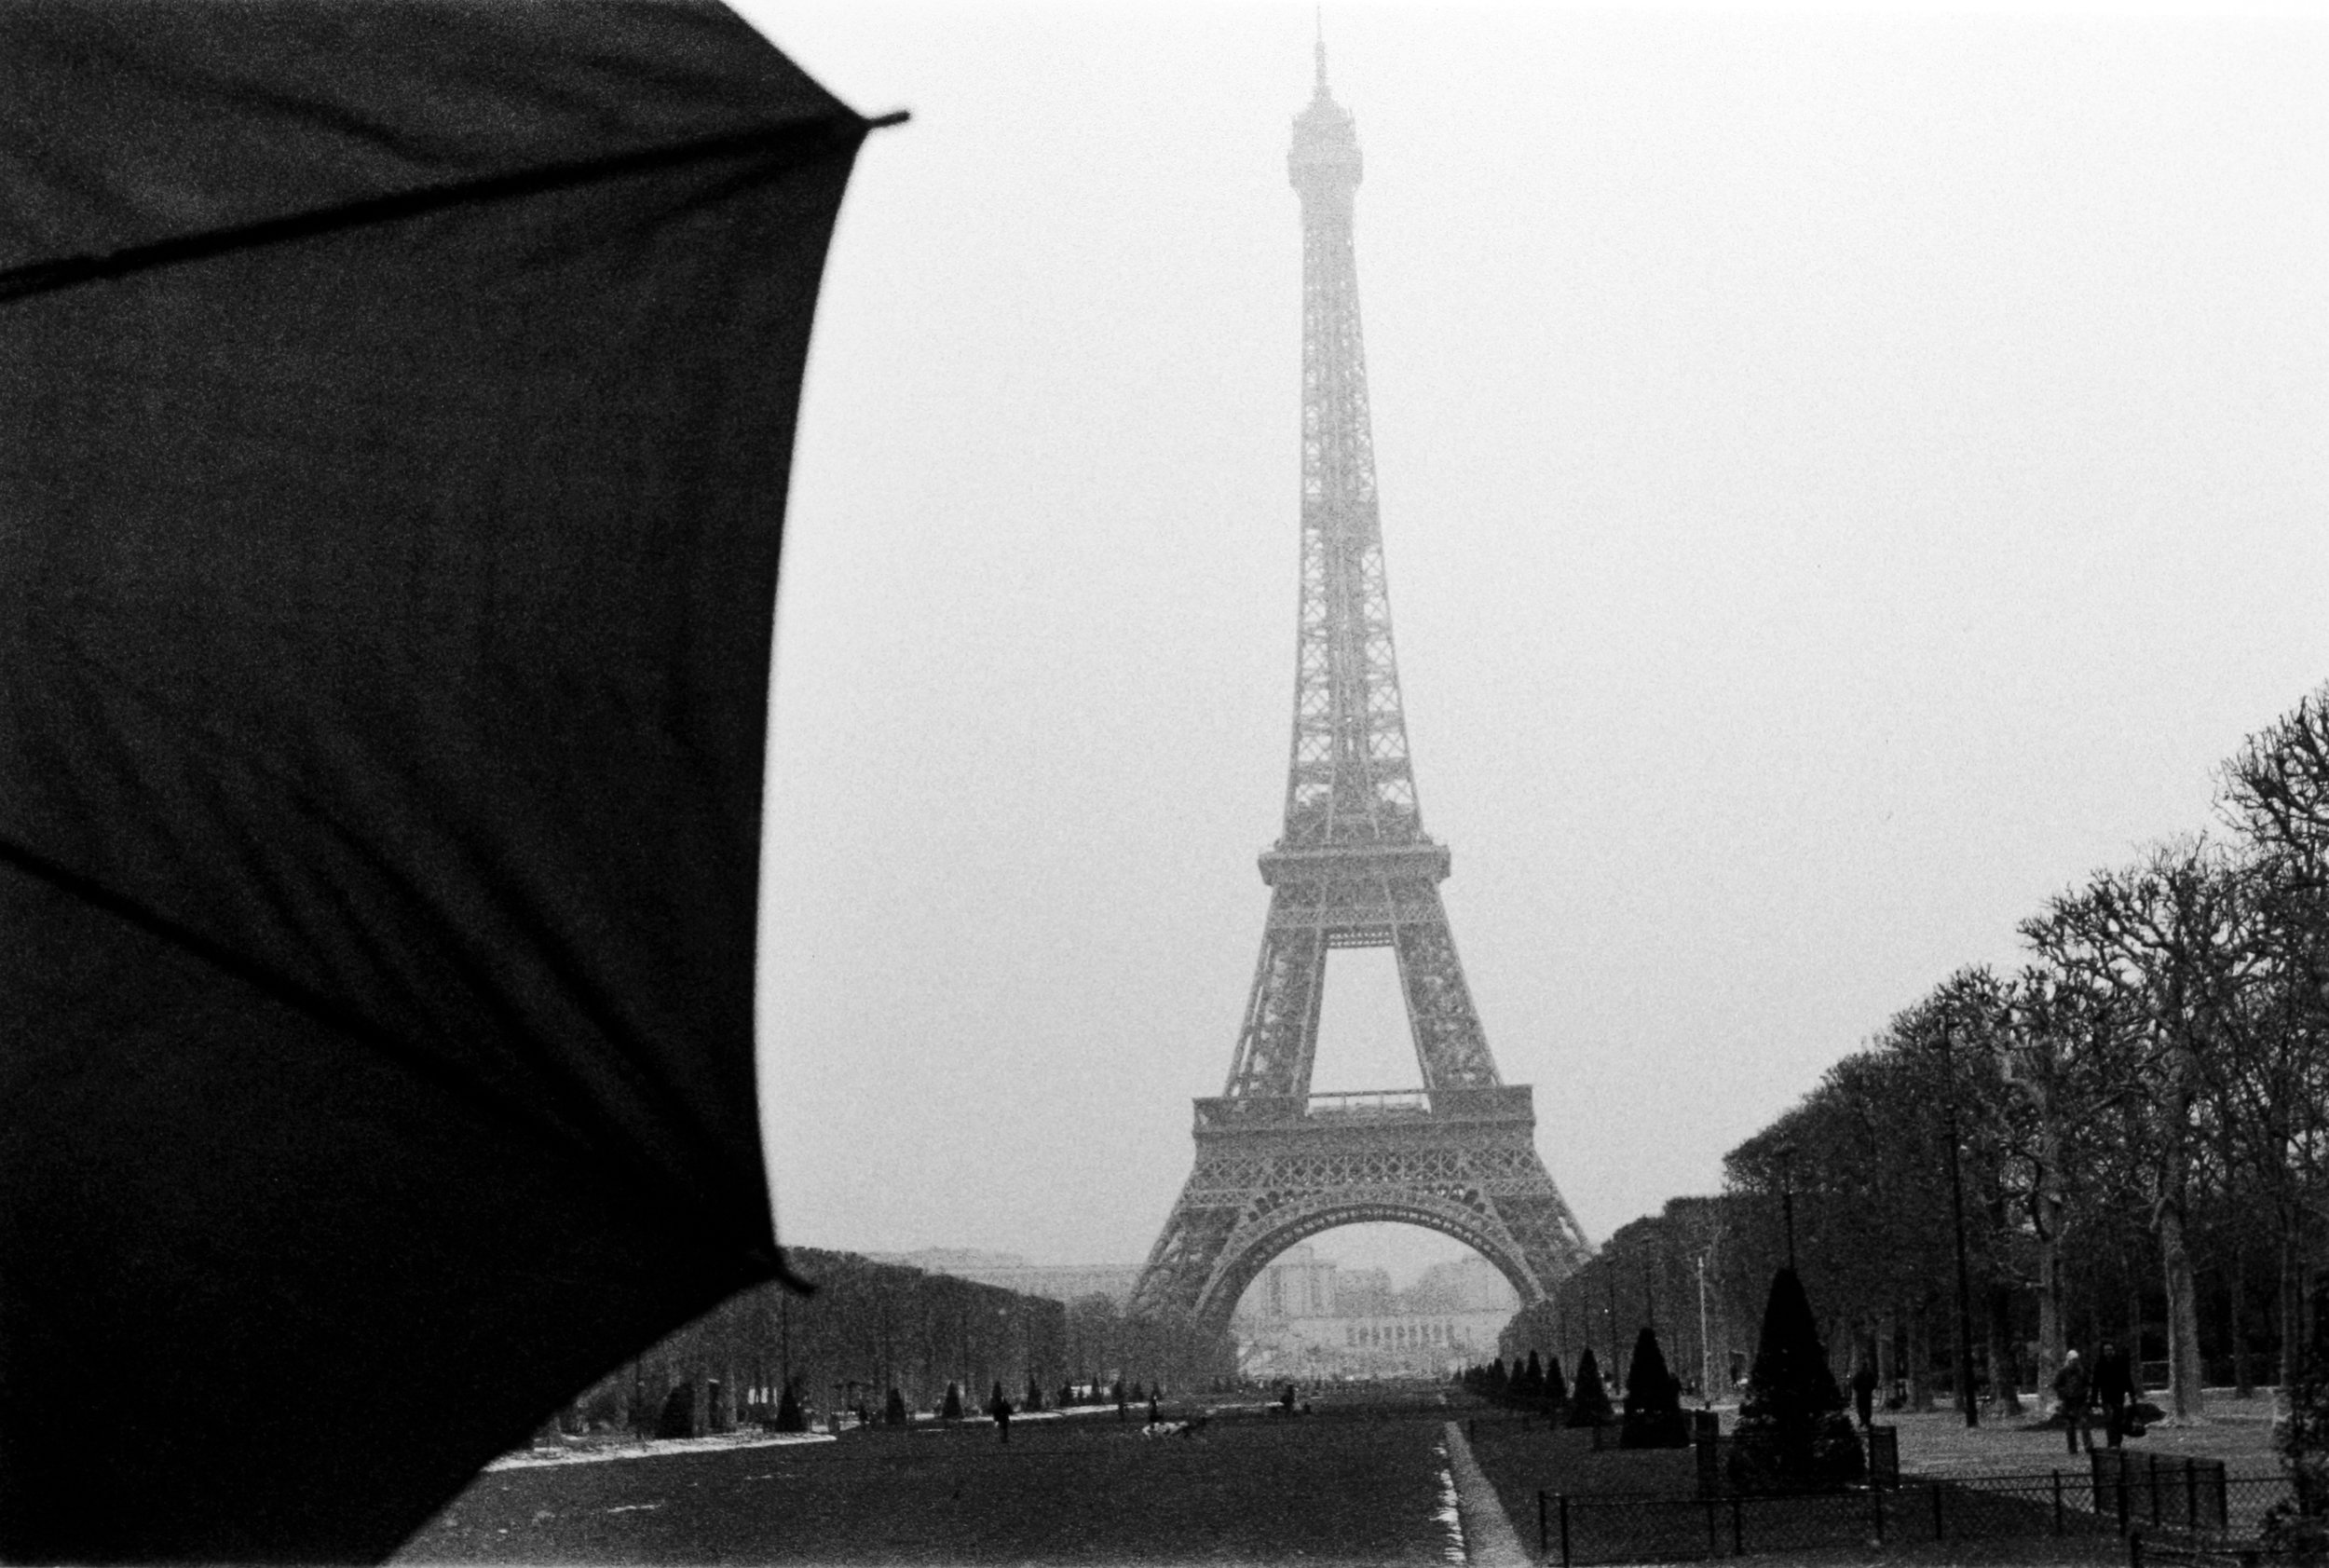 My umbrella in Paris